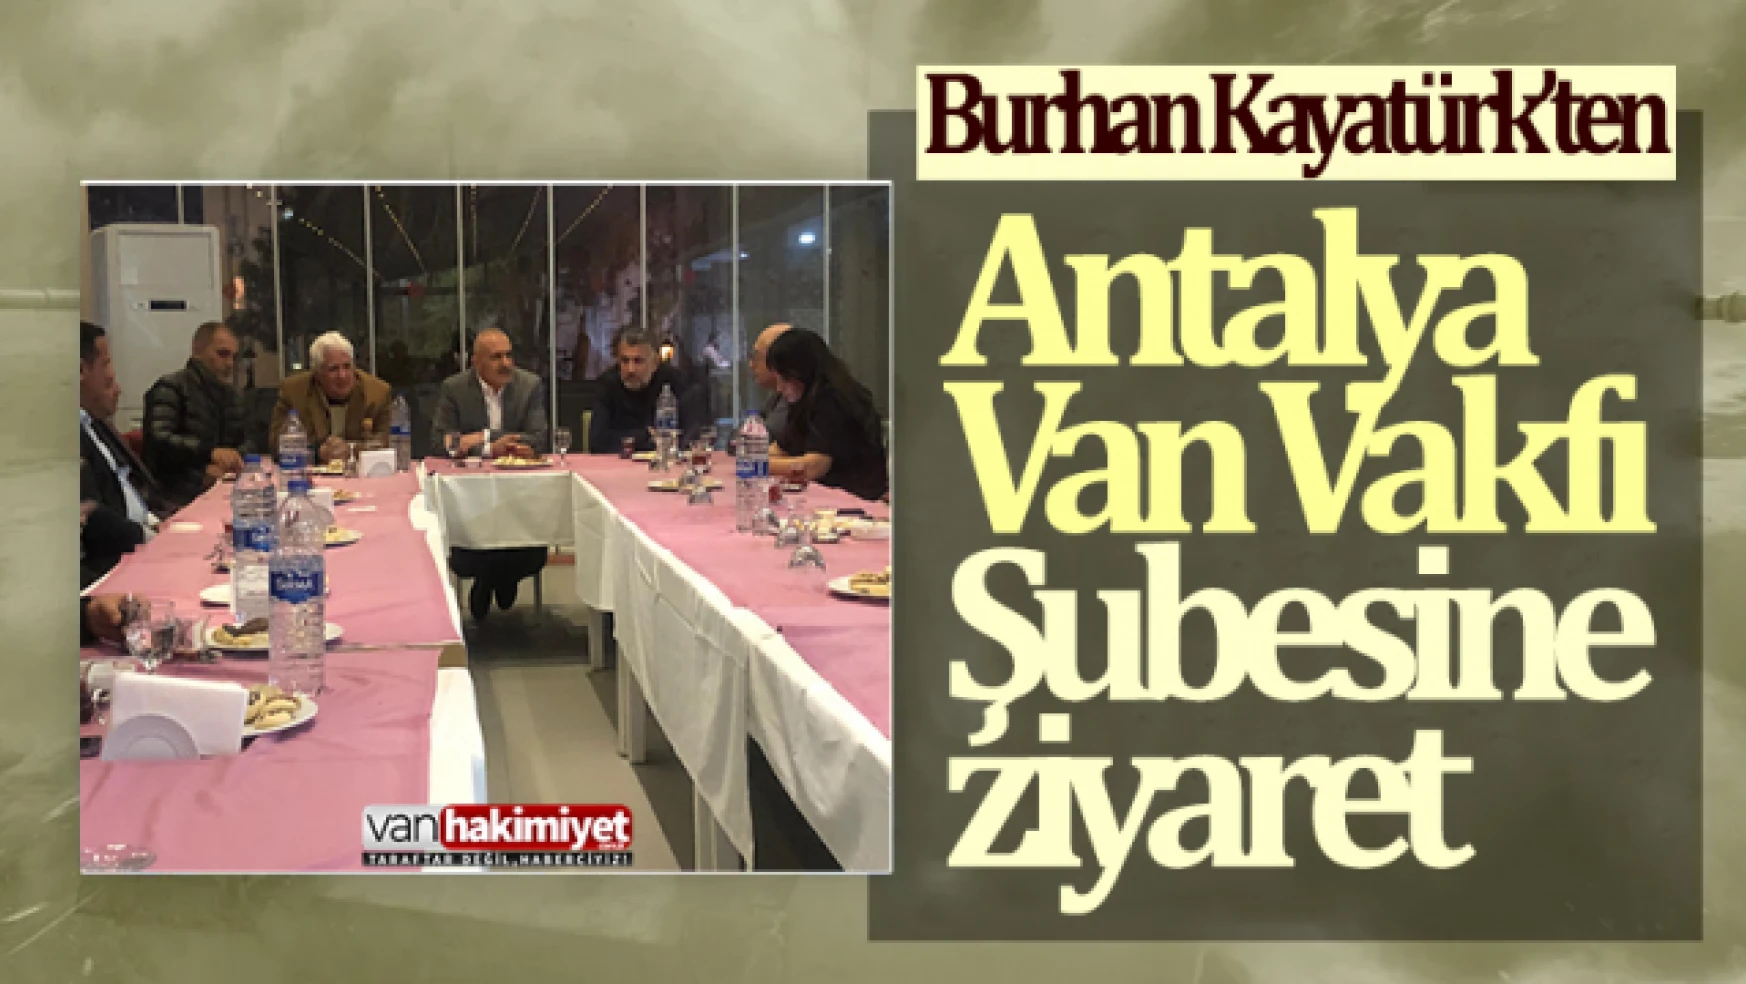 Burhan Kayatürk'ten Antalya Van Vakfına ziyaret